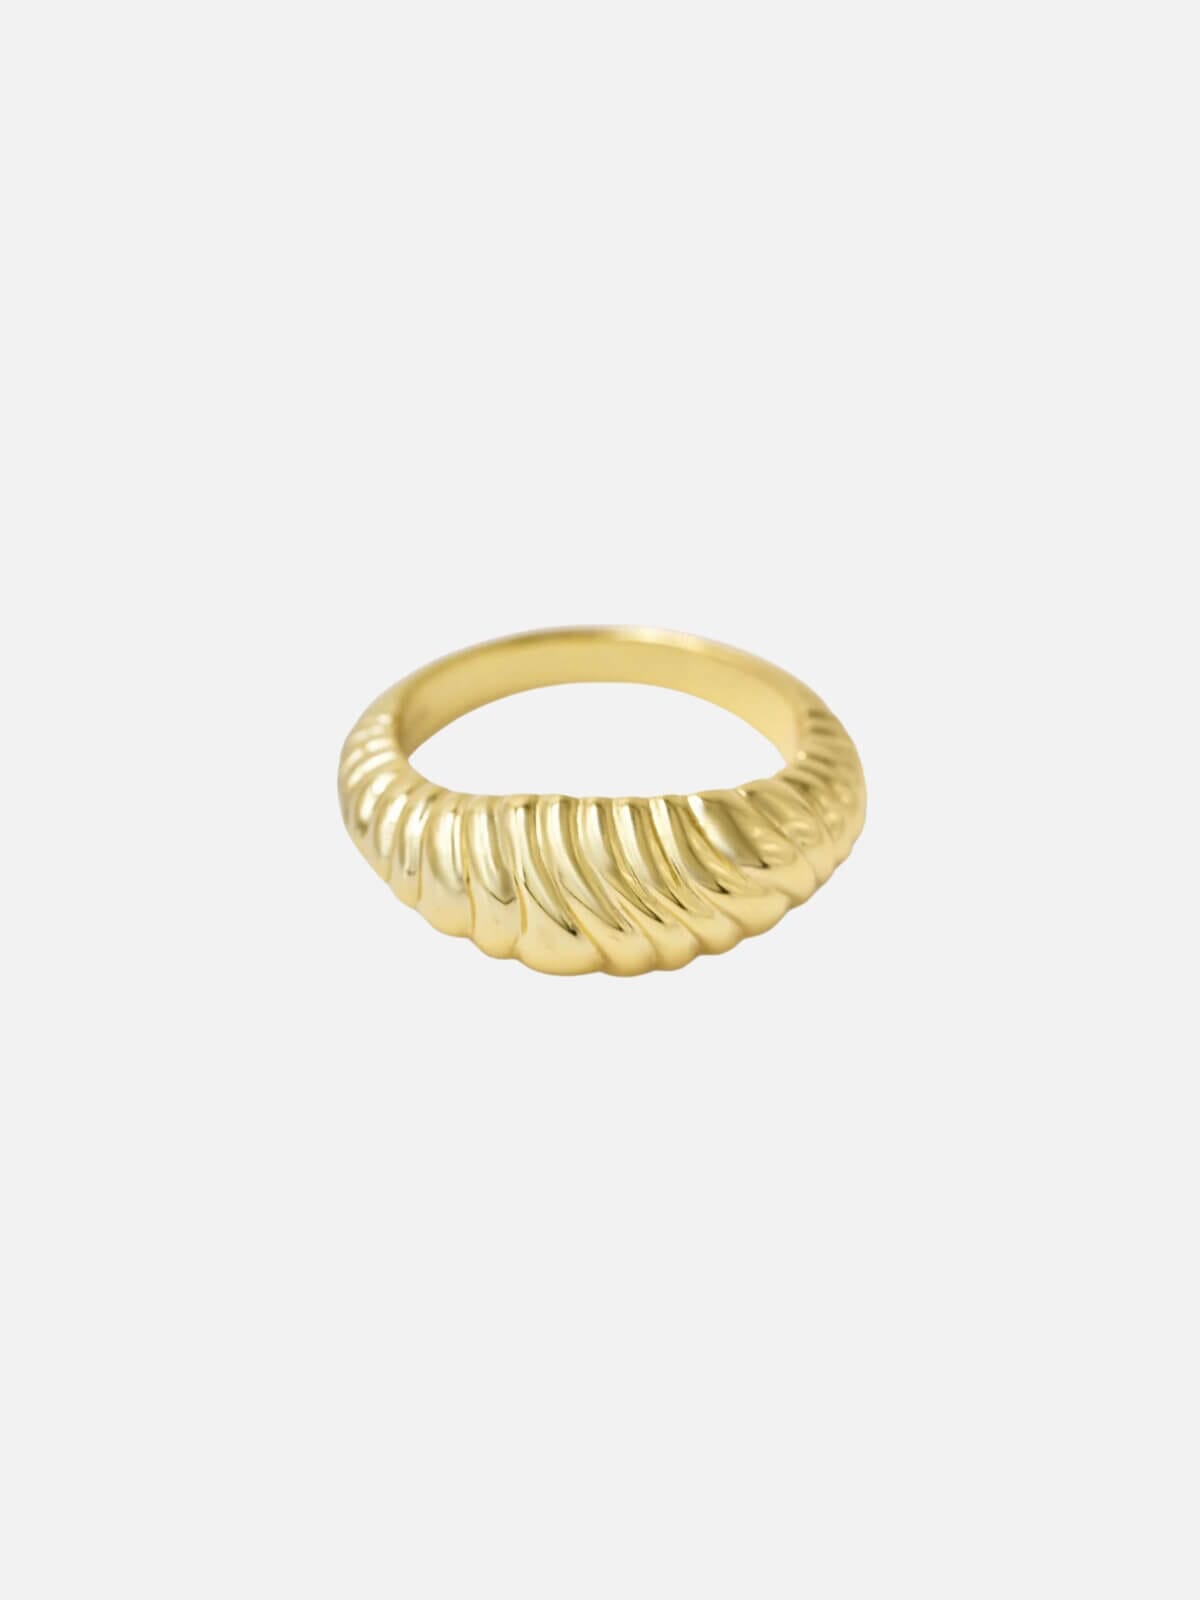 Brie Leon | Olar Ring - Gold | Perlu